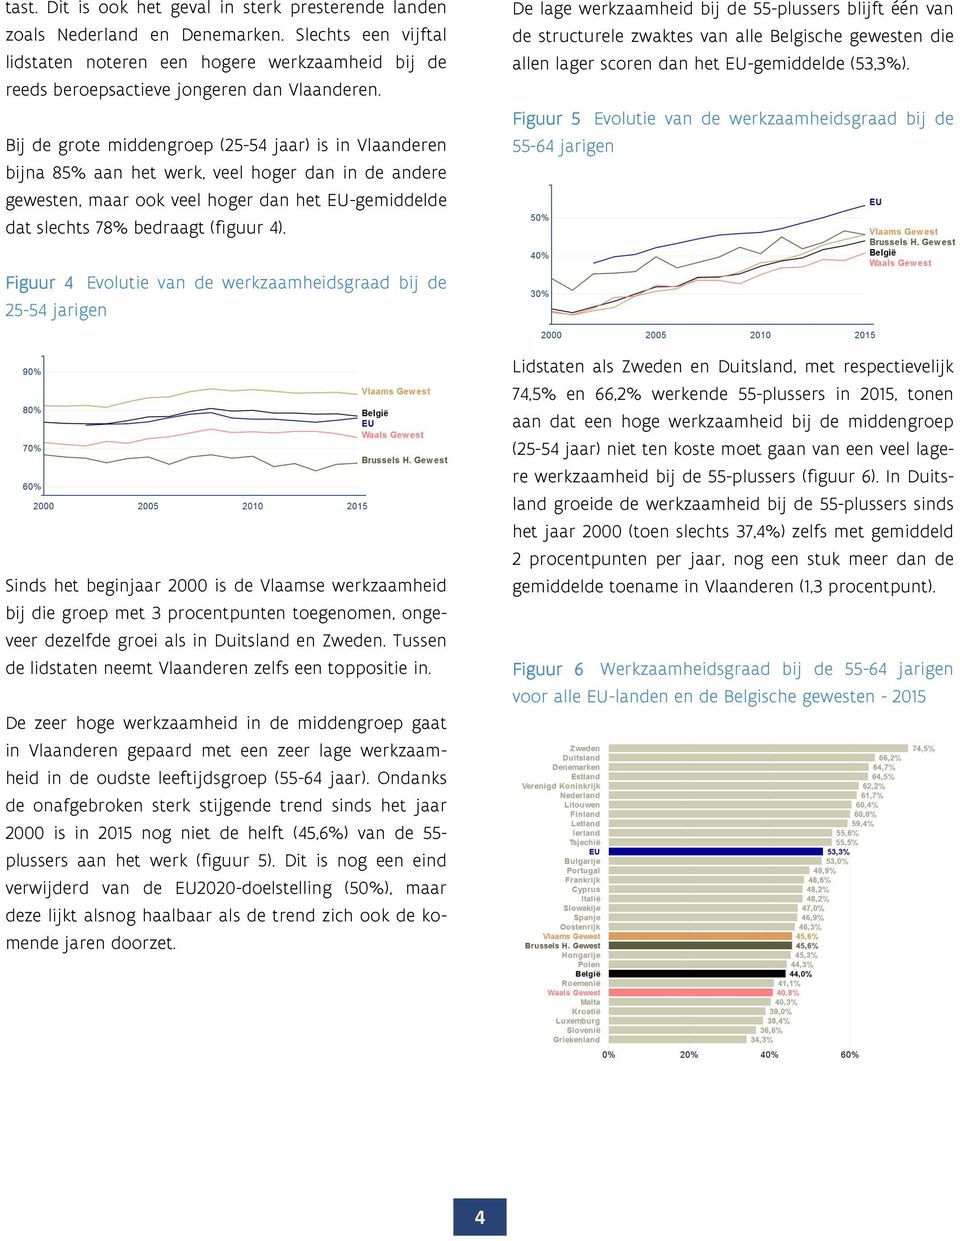 De lage werkzaamheid bij de 55-plussers blijft één van de structurele zwaktes van alle Belgische gewesten die allen lager scoren dan het EU-gemiddelde (53,3%).